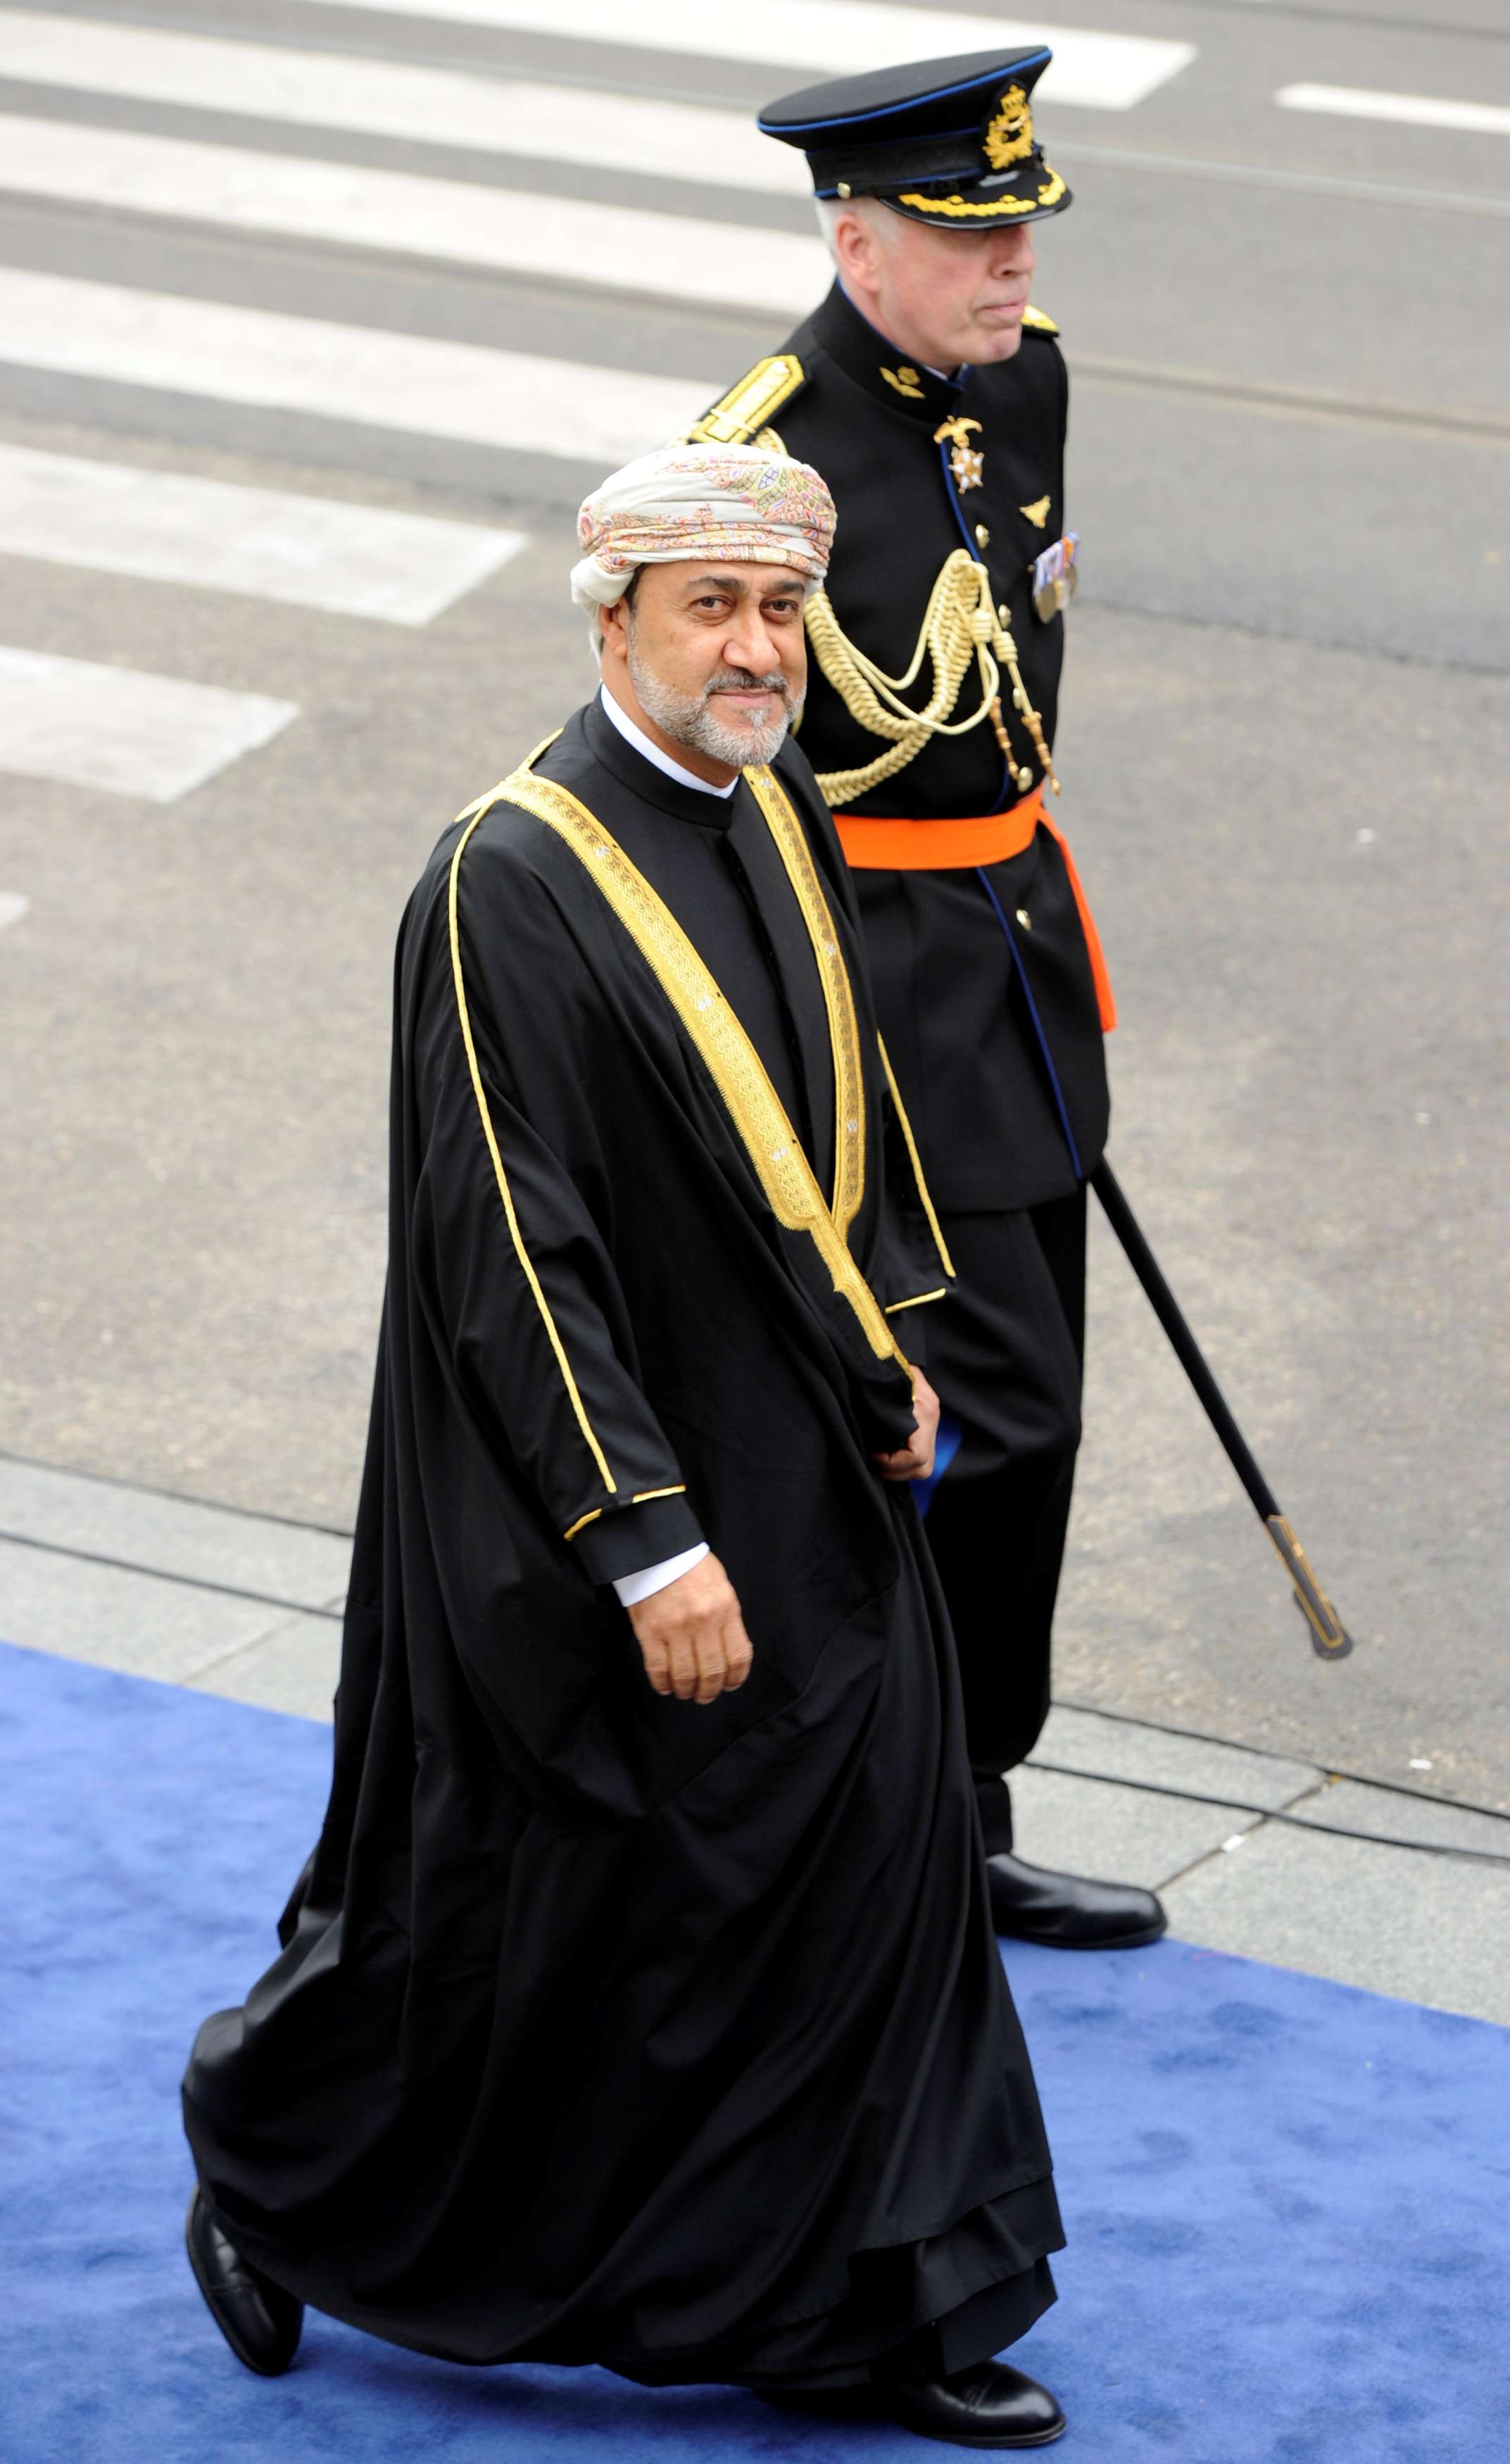 سلطان عمان الجديد هيثم بن طارق آل سعيد 